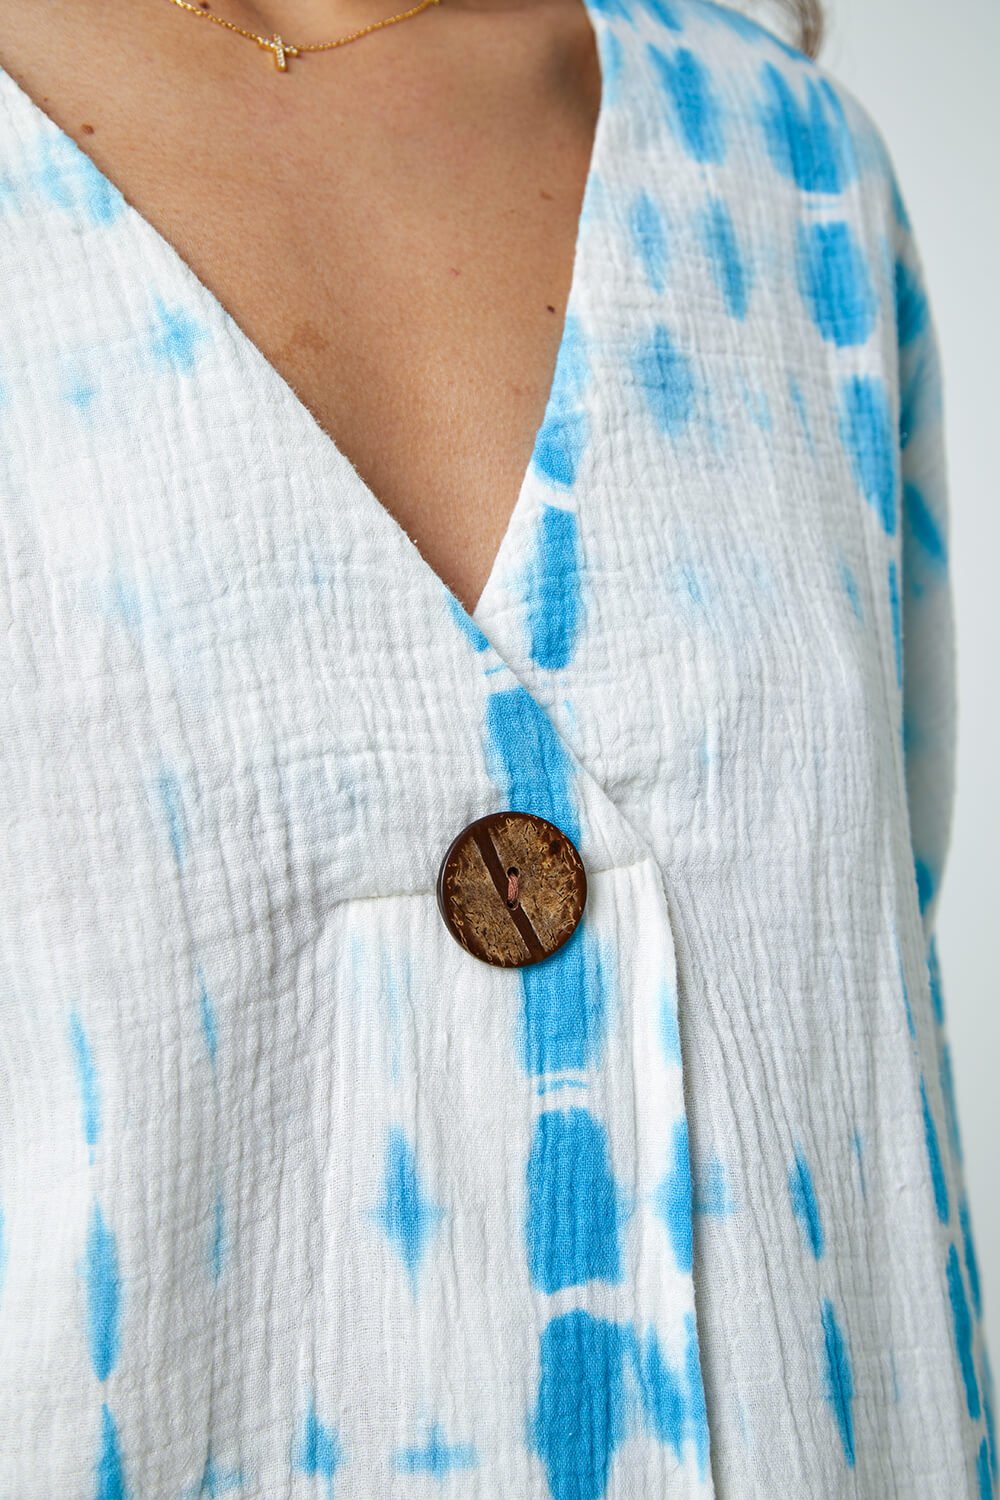 Aqua Cotton Tie Dye Button Detail Top, Image 5 of 5